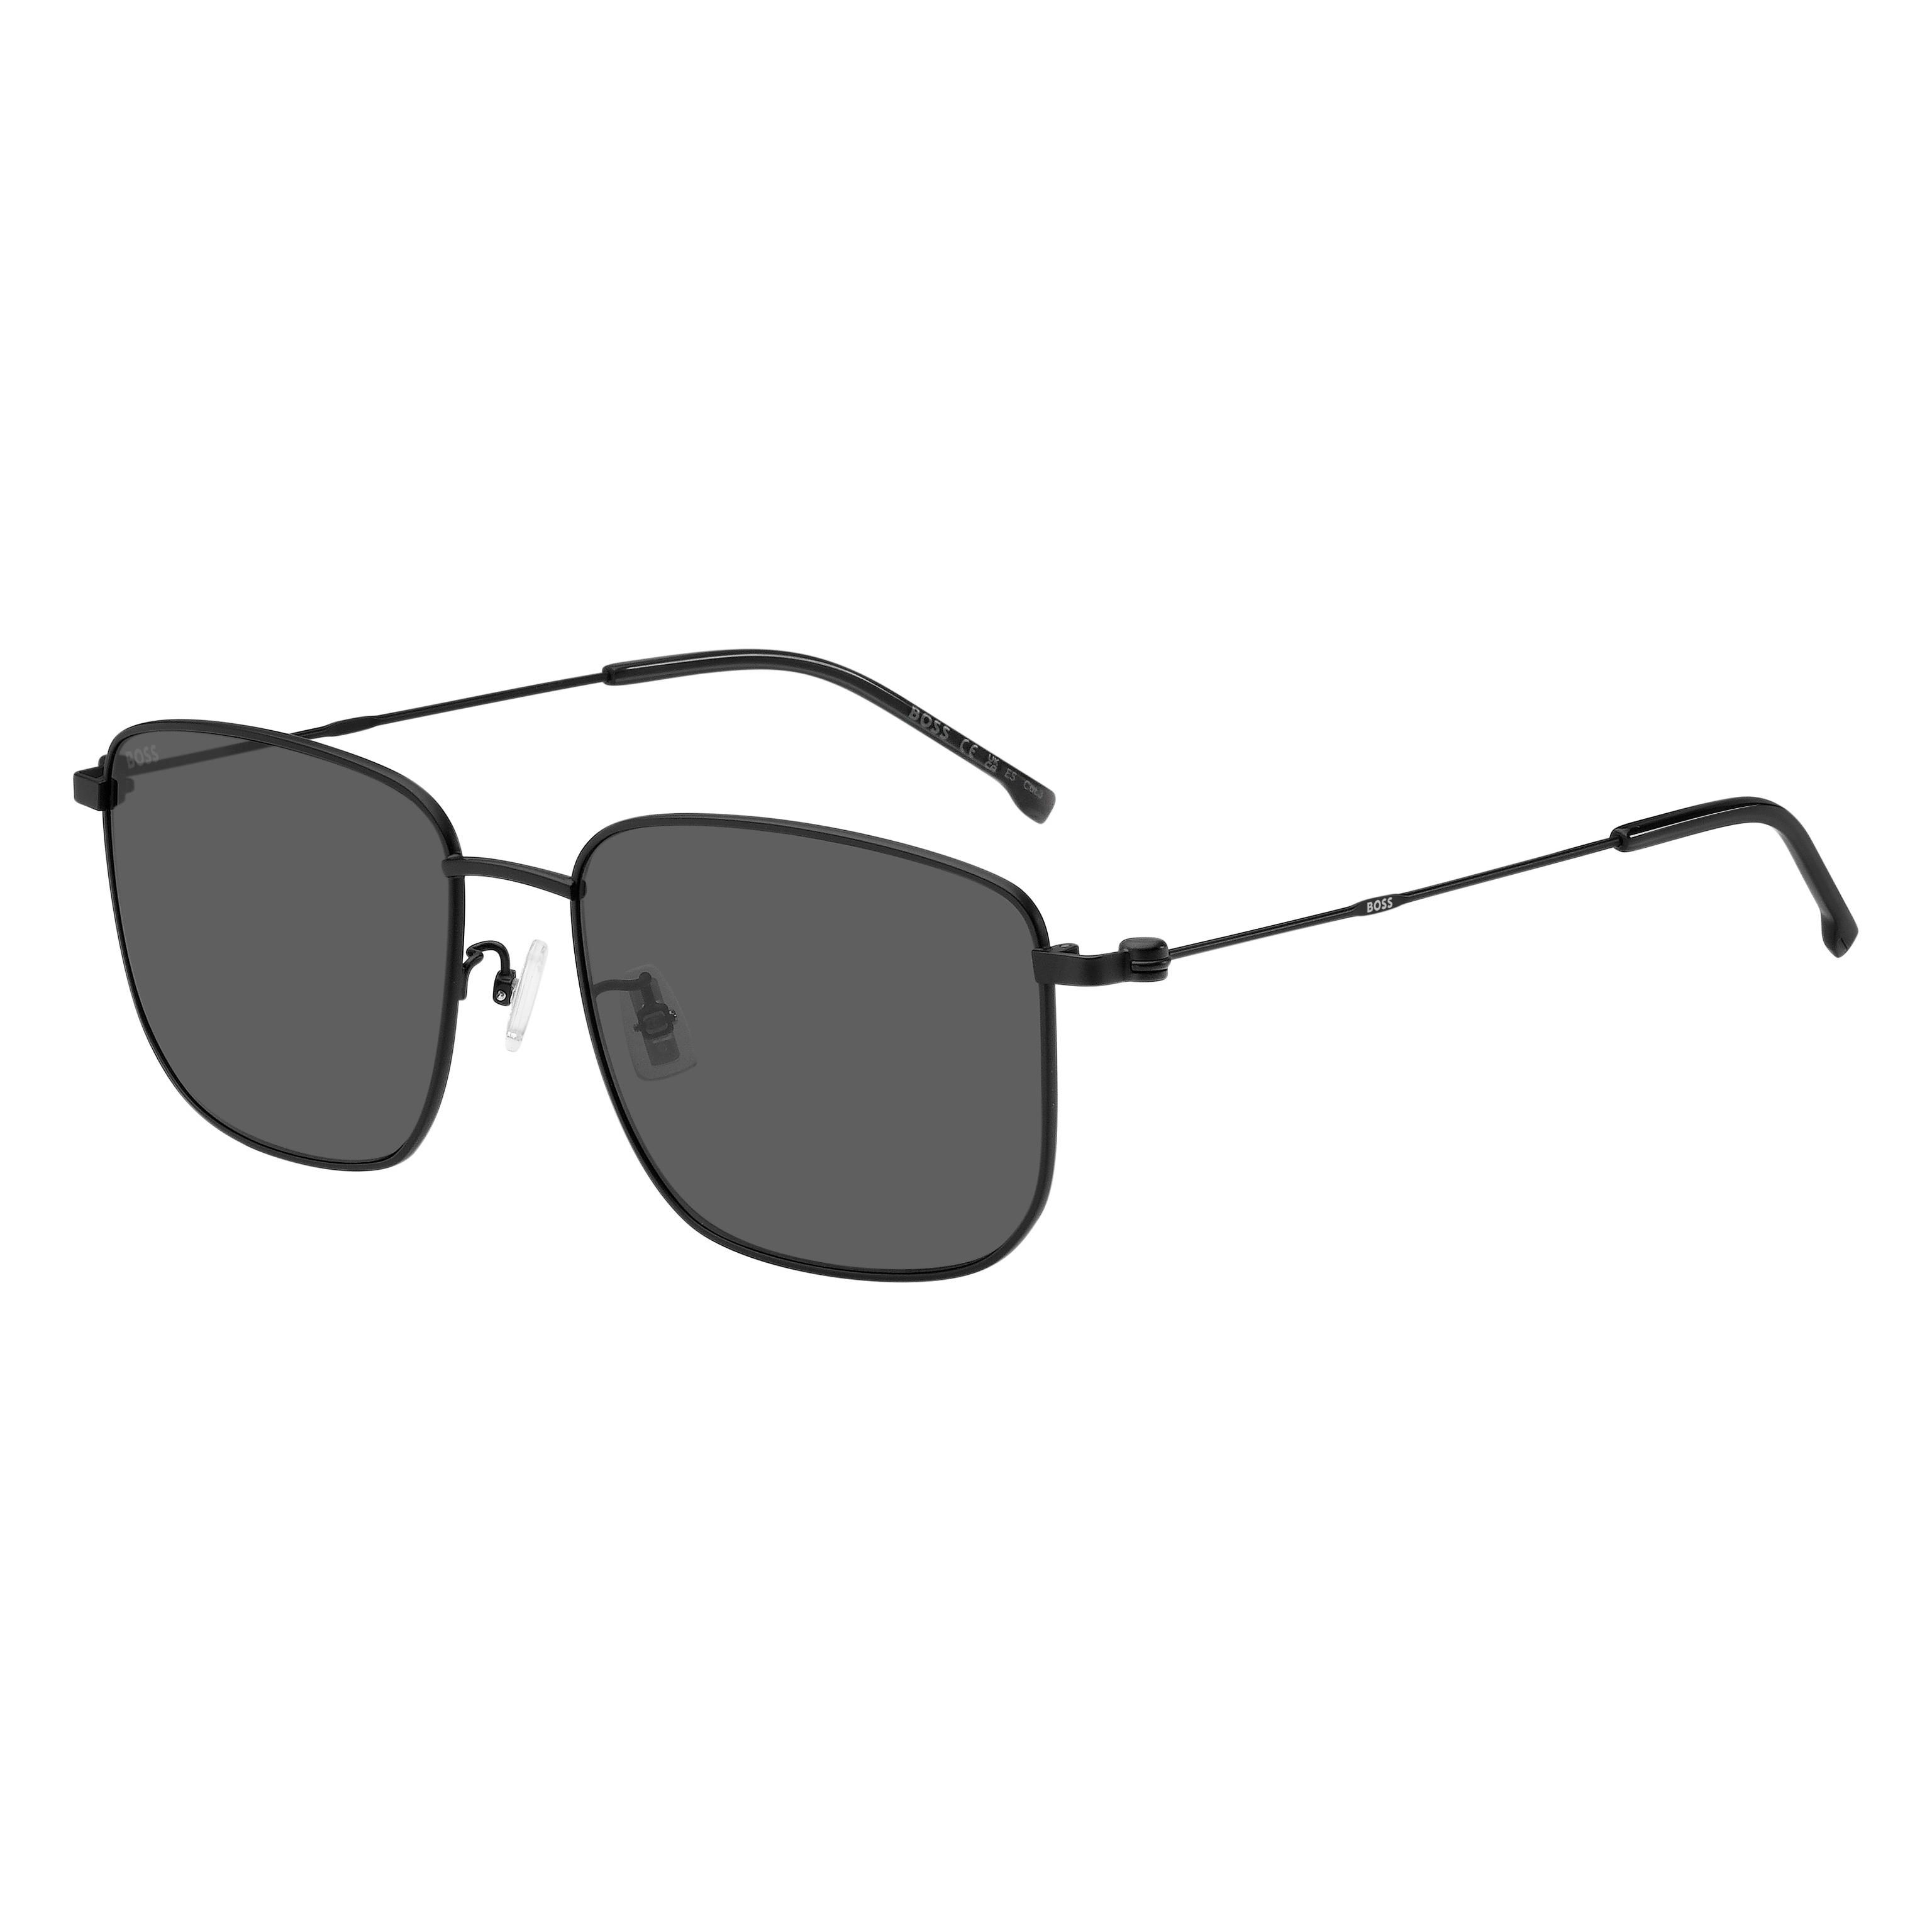 BOSS 1619 F S Square Sunglasses 003 - size 58